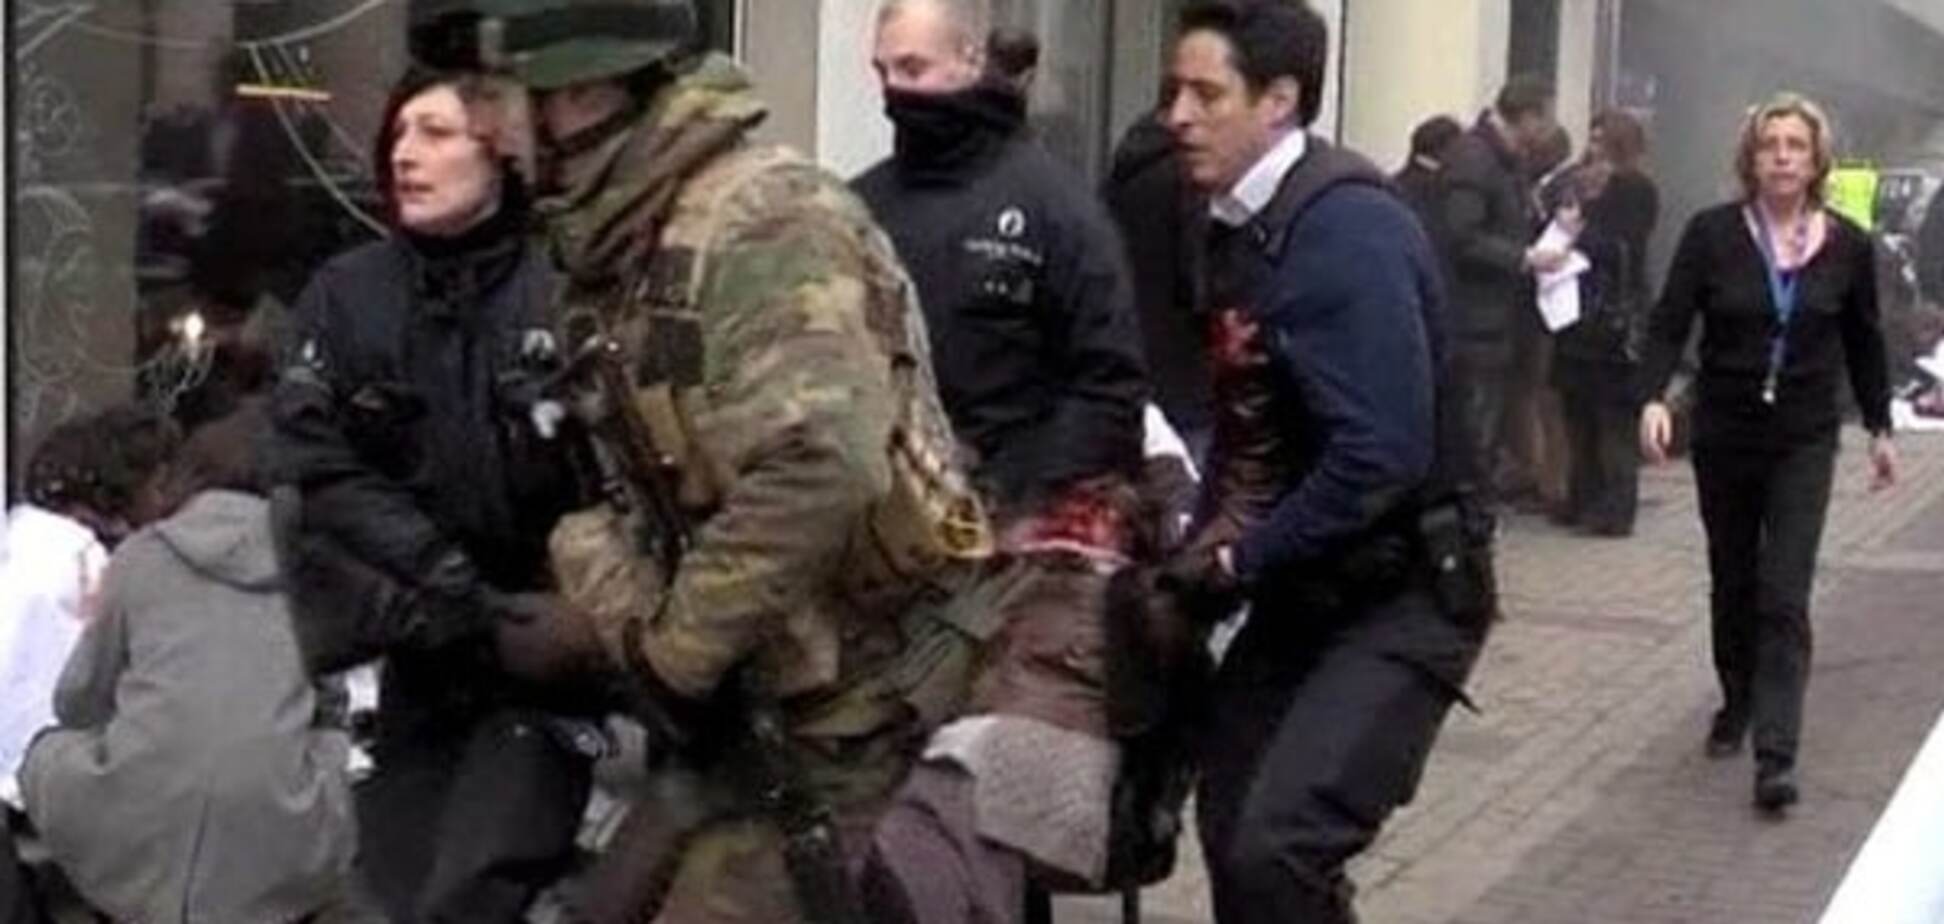 Чим пов'язані вирок Савченко і теракти в Брюсселі